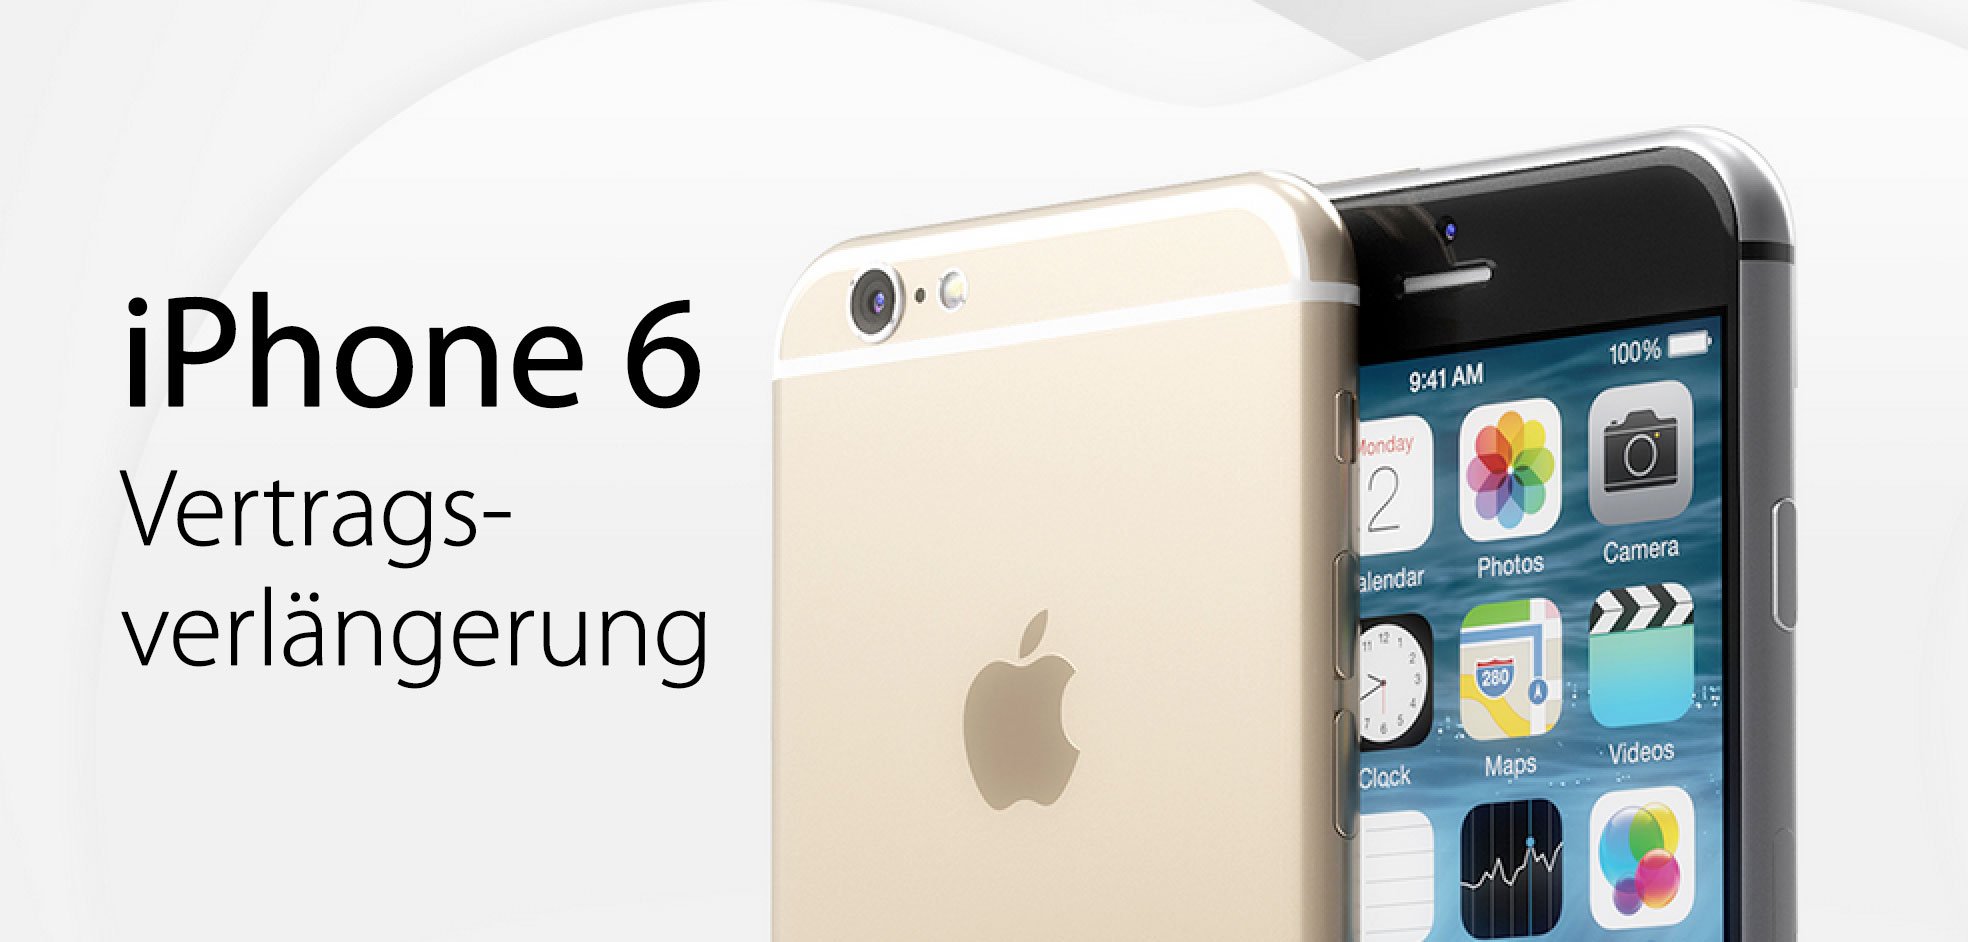 iPhone 6 Vertragsverlängerung: VVL bei Telekom, Vodafone, O2 1